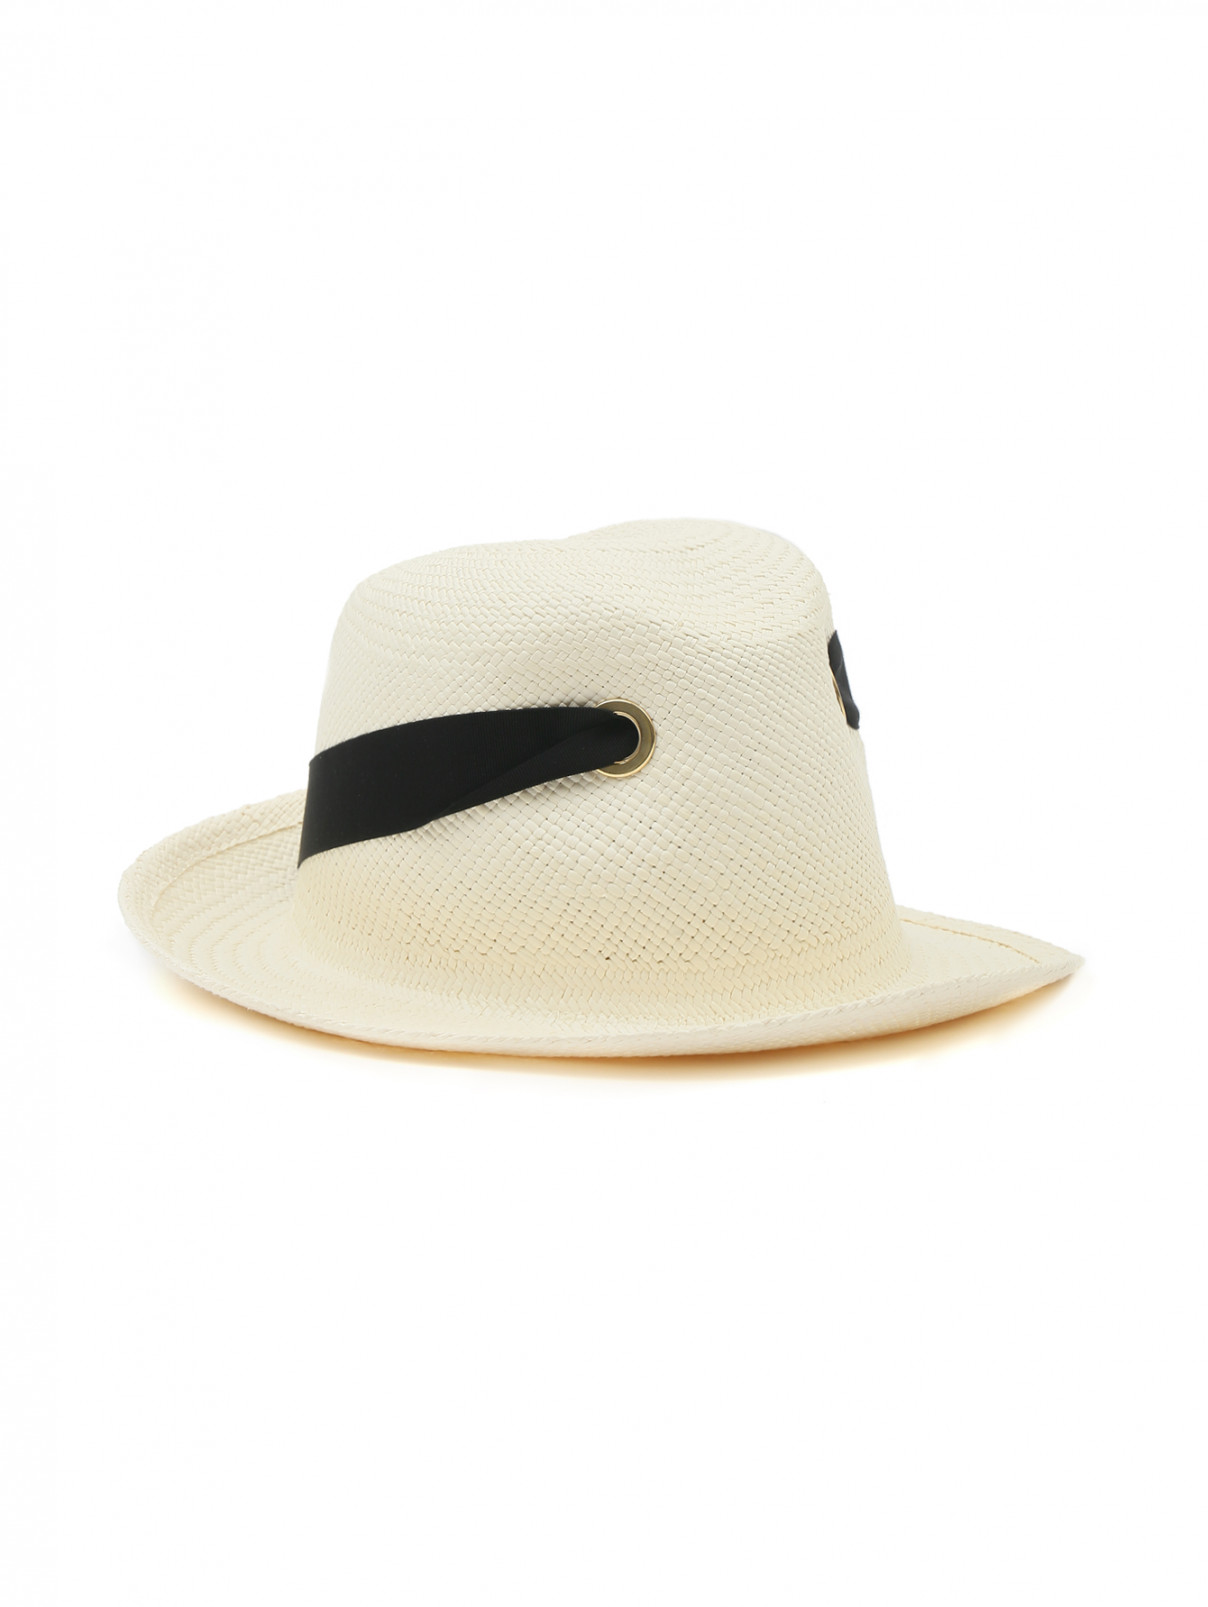 Плетеная шляпа с контрастной отделкой Federica Moretti  –  Общий вид  – Цвет:  Белый